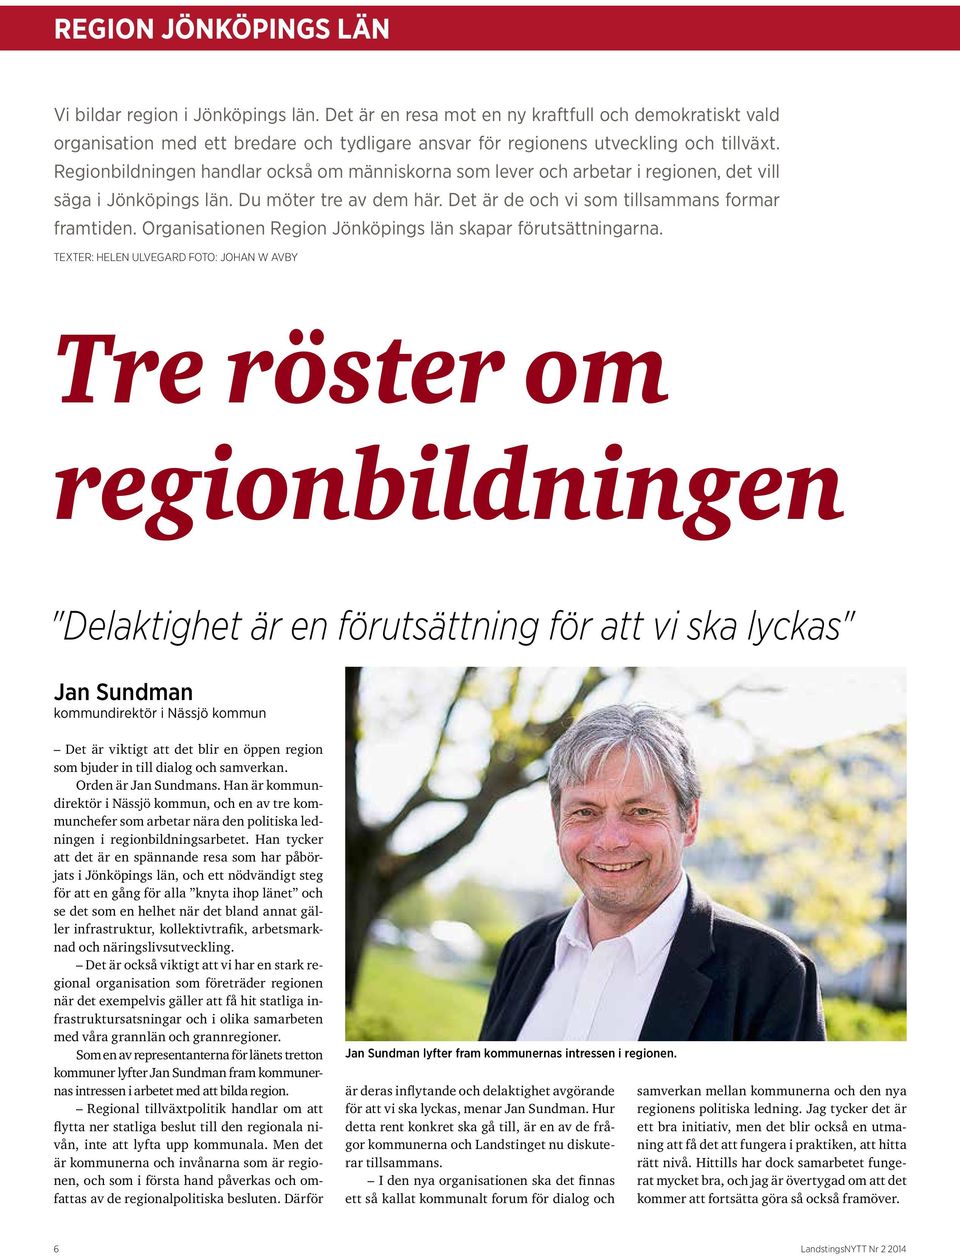 Regionbildningen handlar också om människorna som lever och arbetar i regionen, det vill säga i Jönköpings län. Du möter tre av dem här. Det är de och vi som tillsammans formar framtiden.